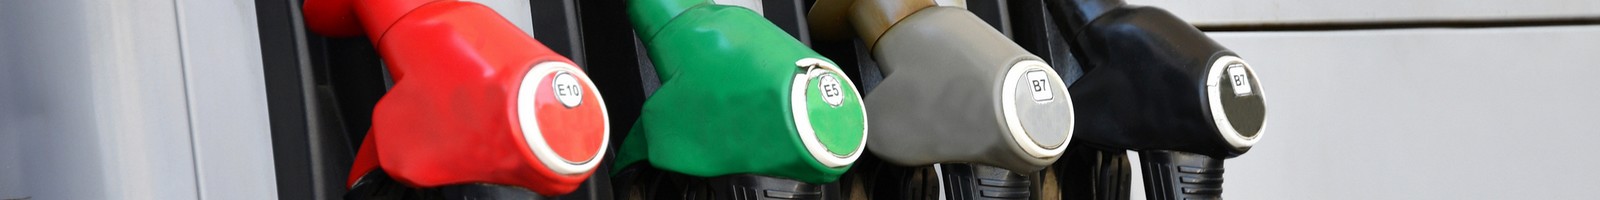 Prix du carburant : vers une accalmie durable?